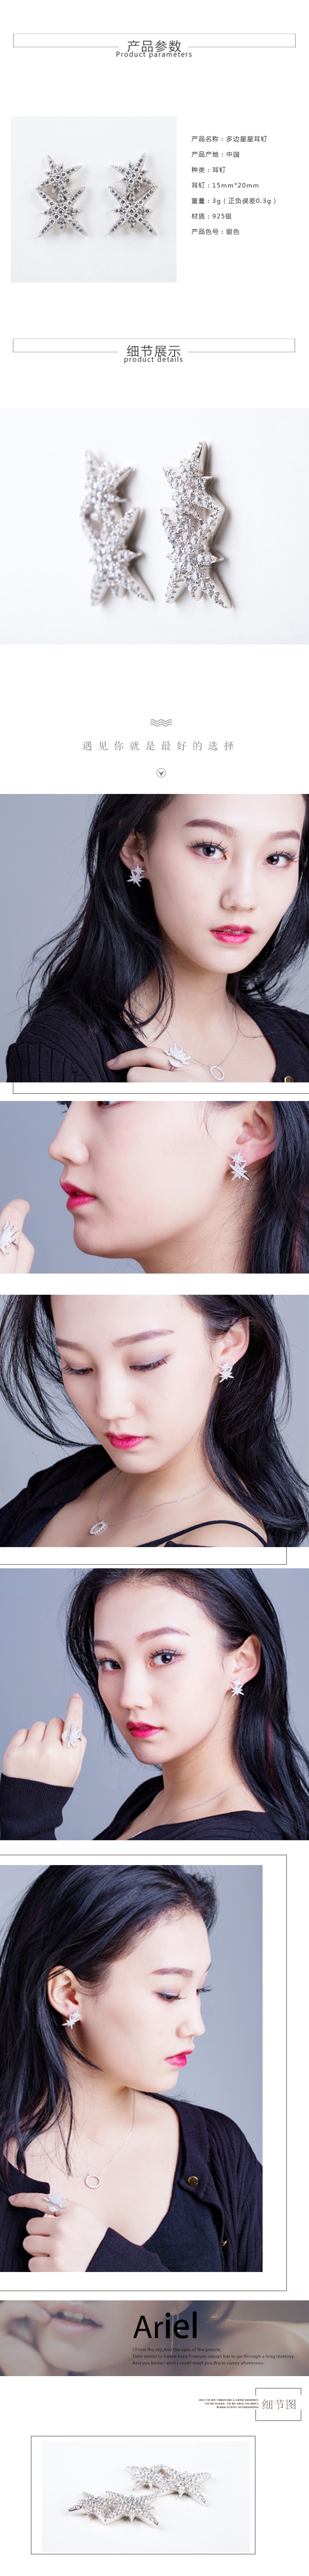 twinkle double star earrings